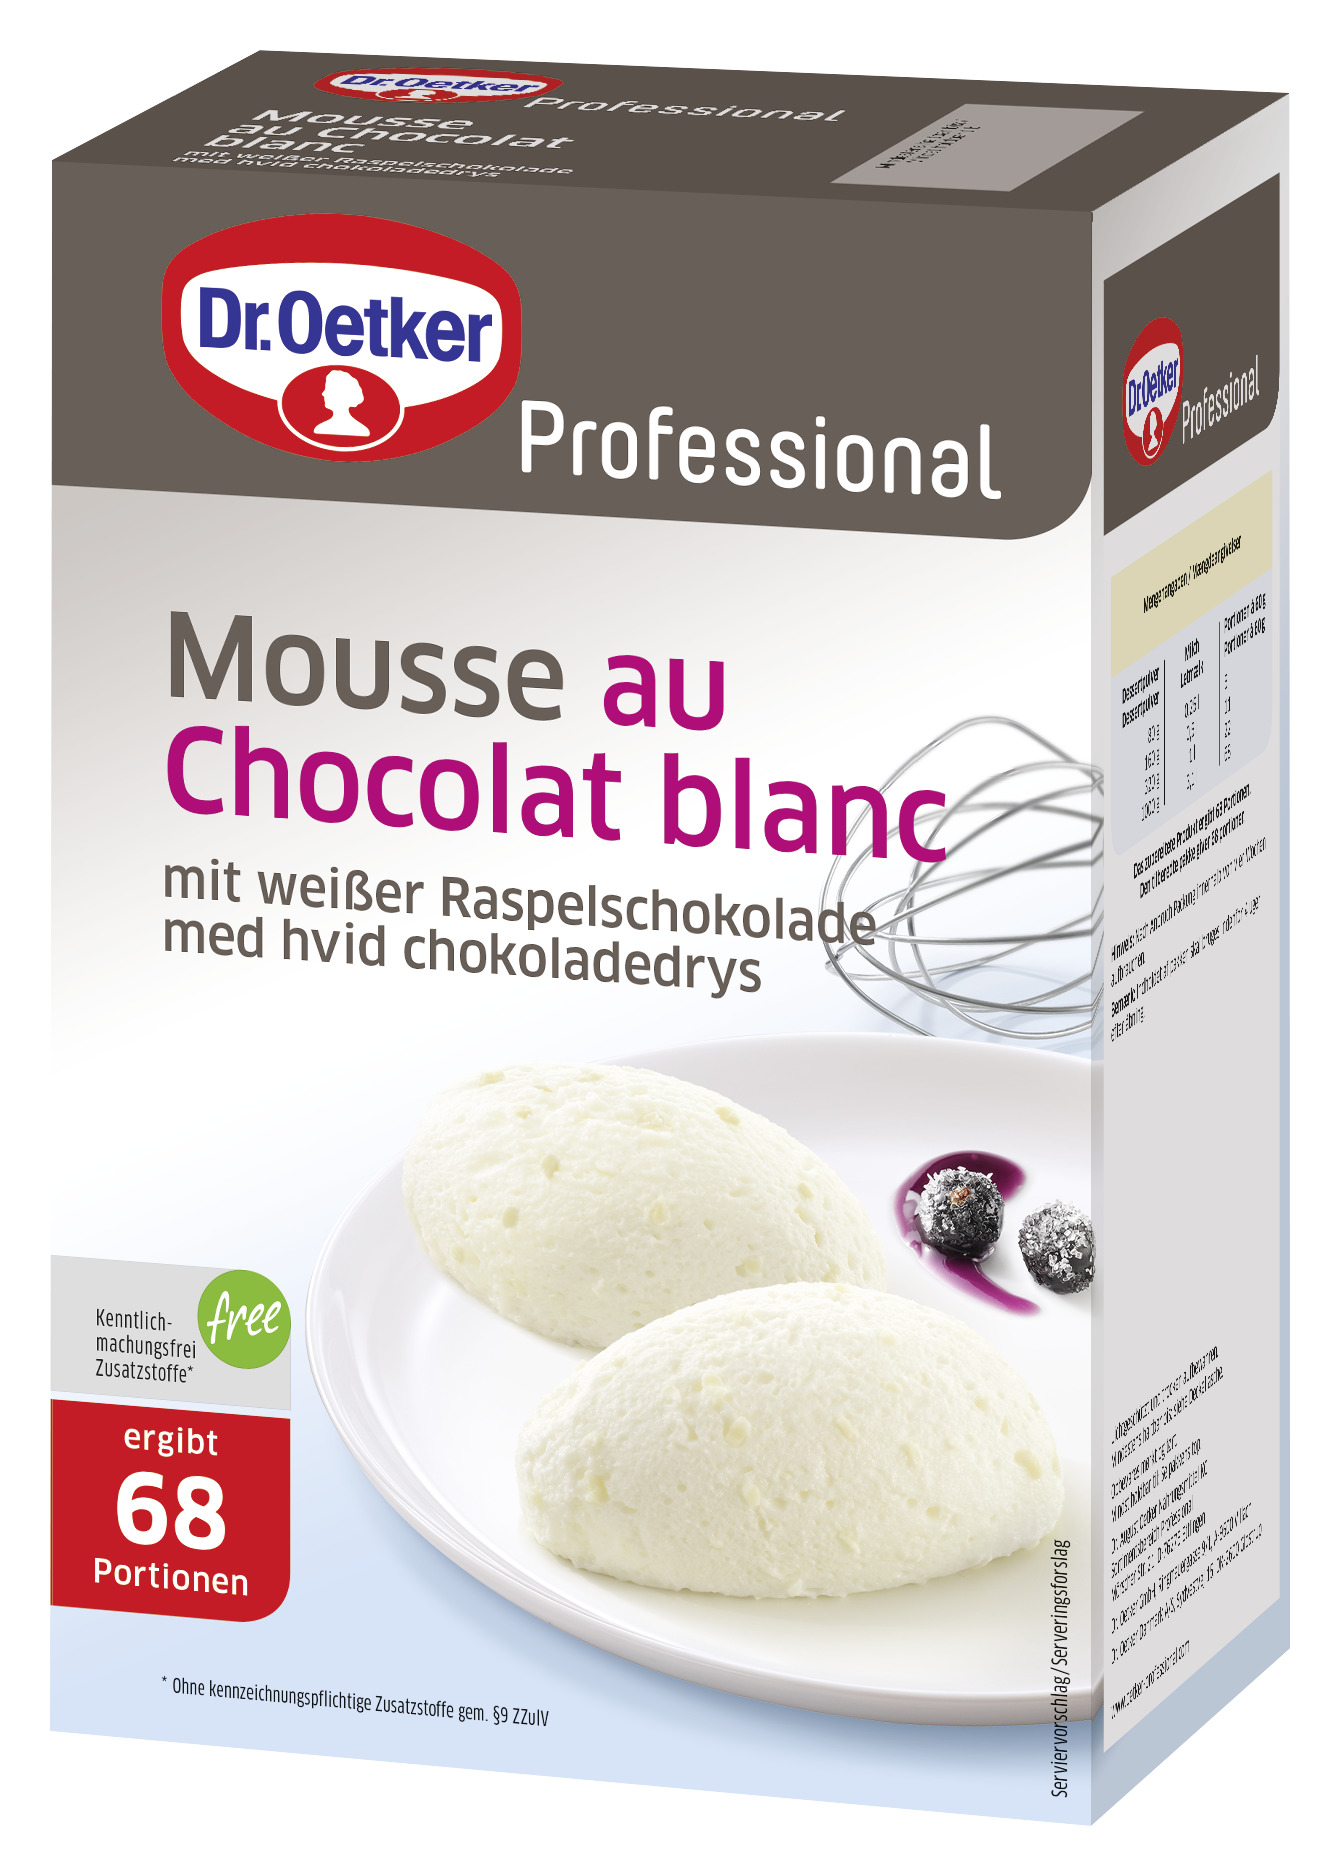 Mousse au Chocolat blanc mit weißer Raspelschokolade 1000g